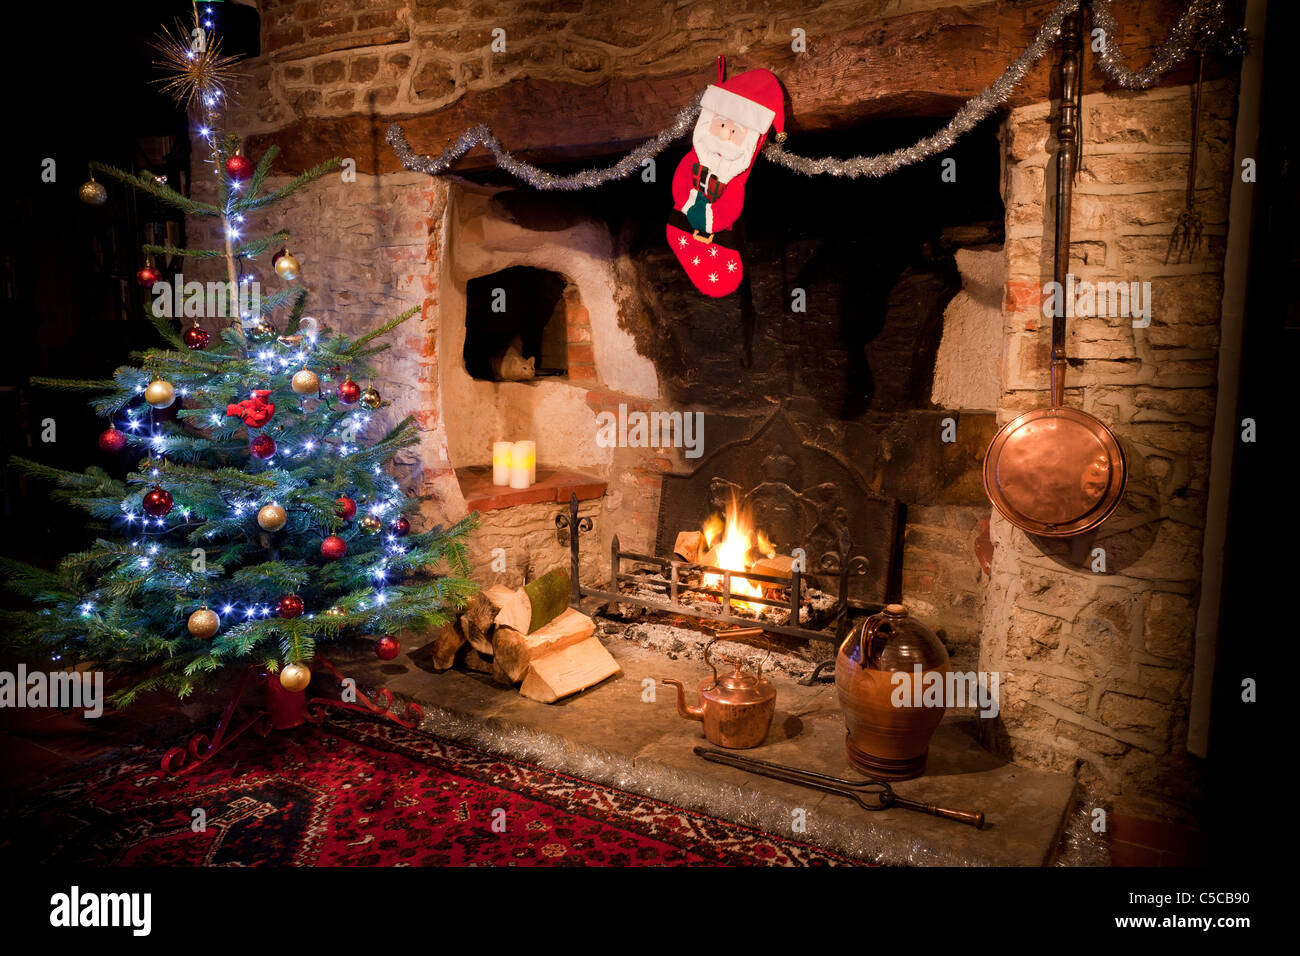 Cheminée dans maison ancienne avec cheminée à combustion faible et l'arbre de Noël décoré, le stockage et le cuivre électrique. JMH5162 Banque D'Images